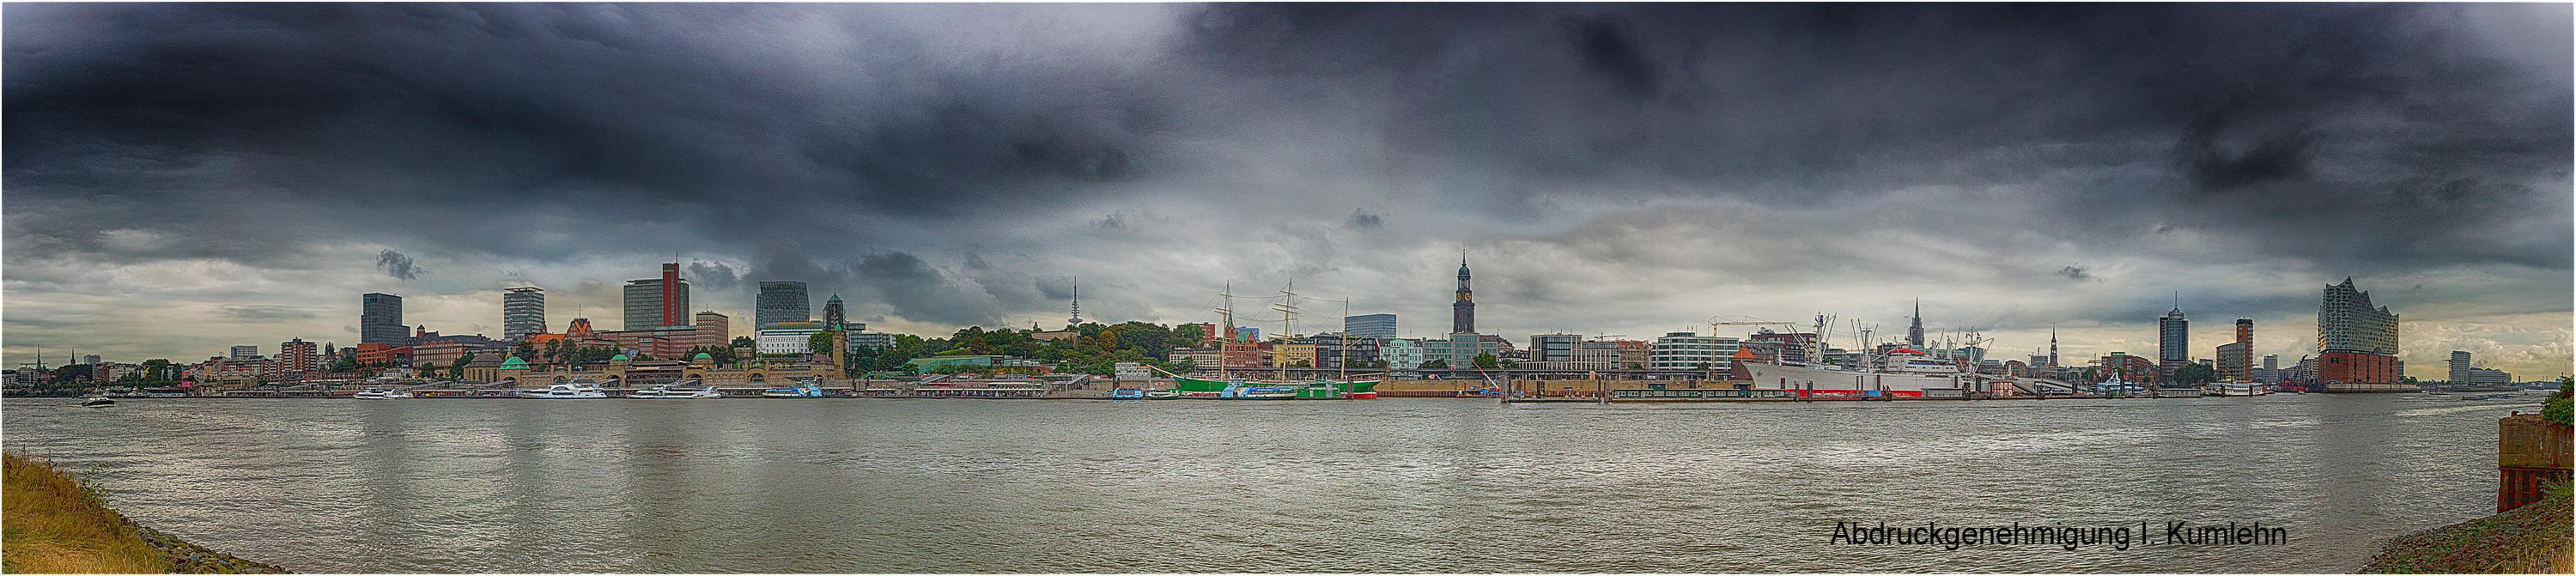 Kumlehn Hafen Panorama 2016_mit quelle.jpg (486203 Byte)